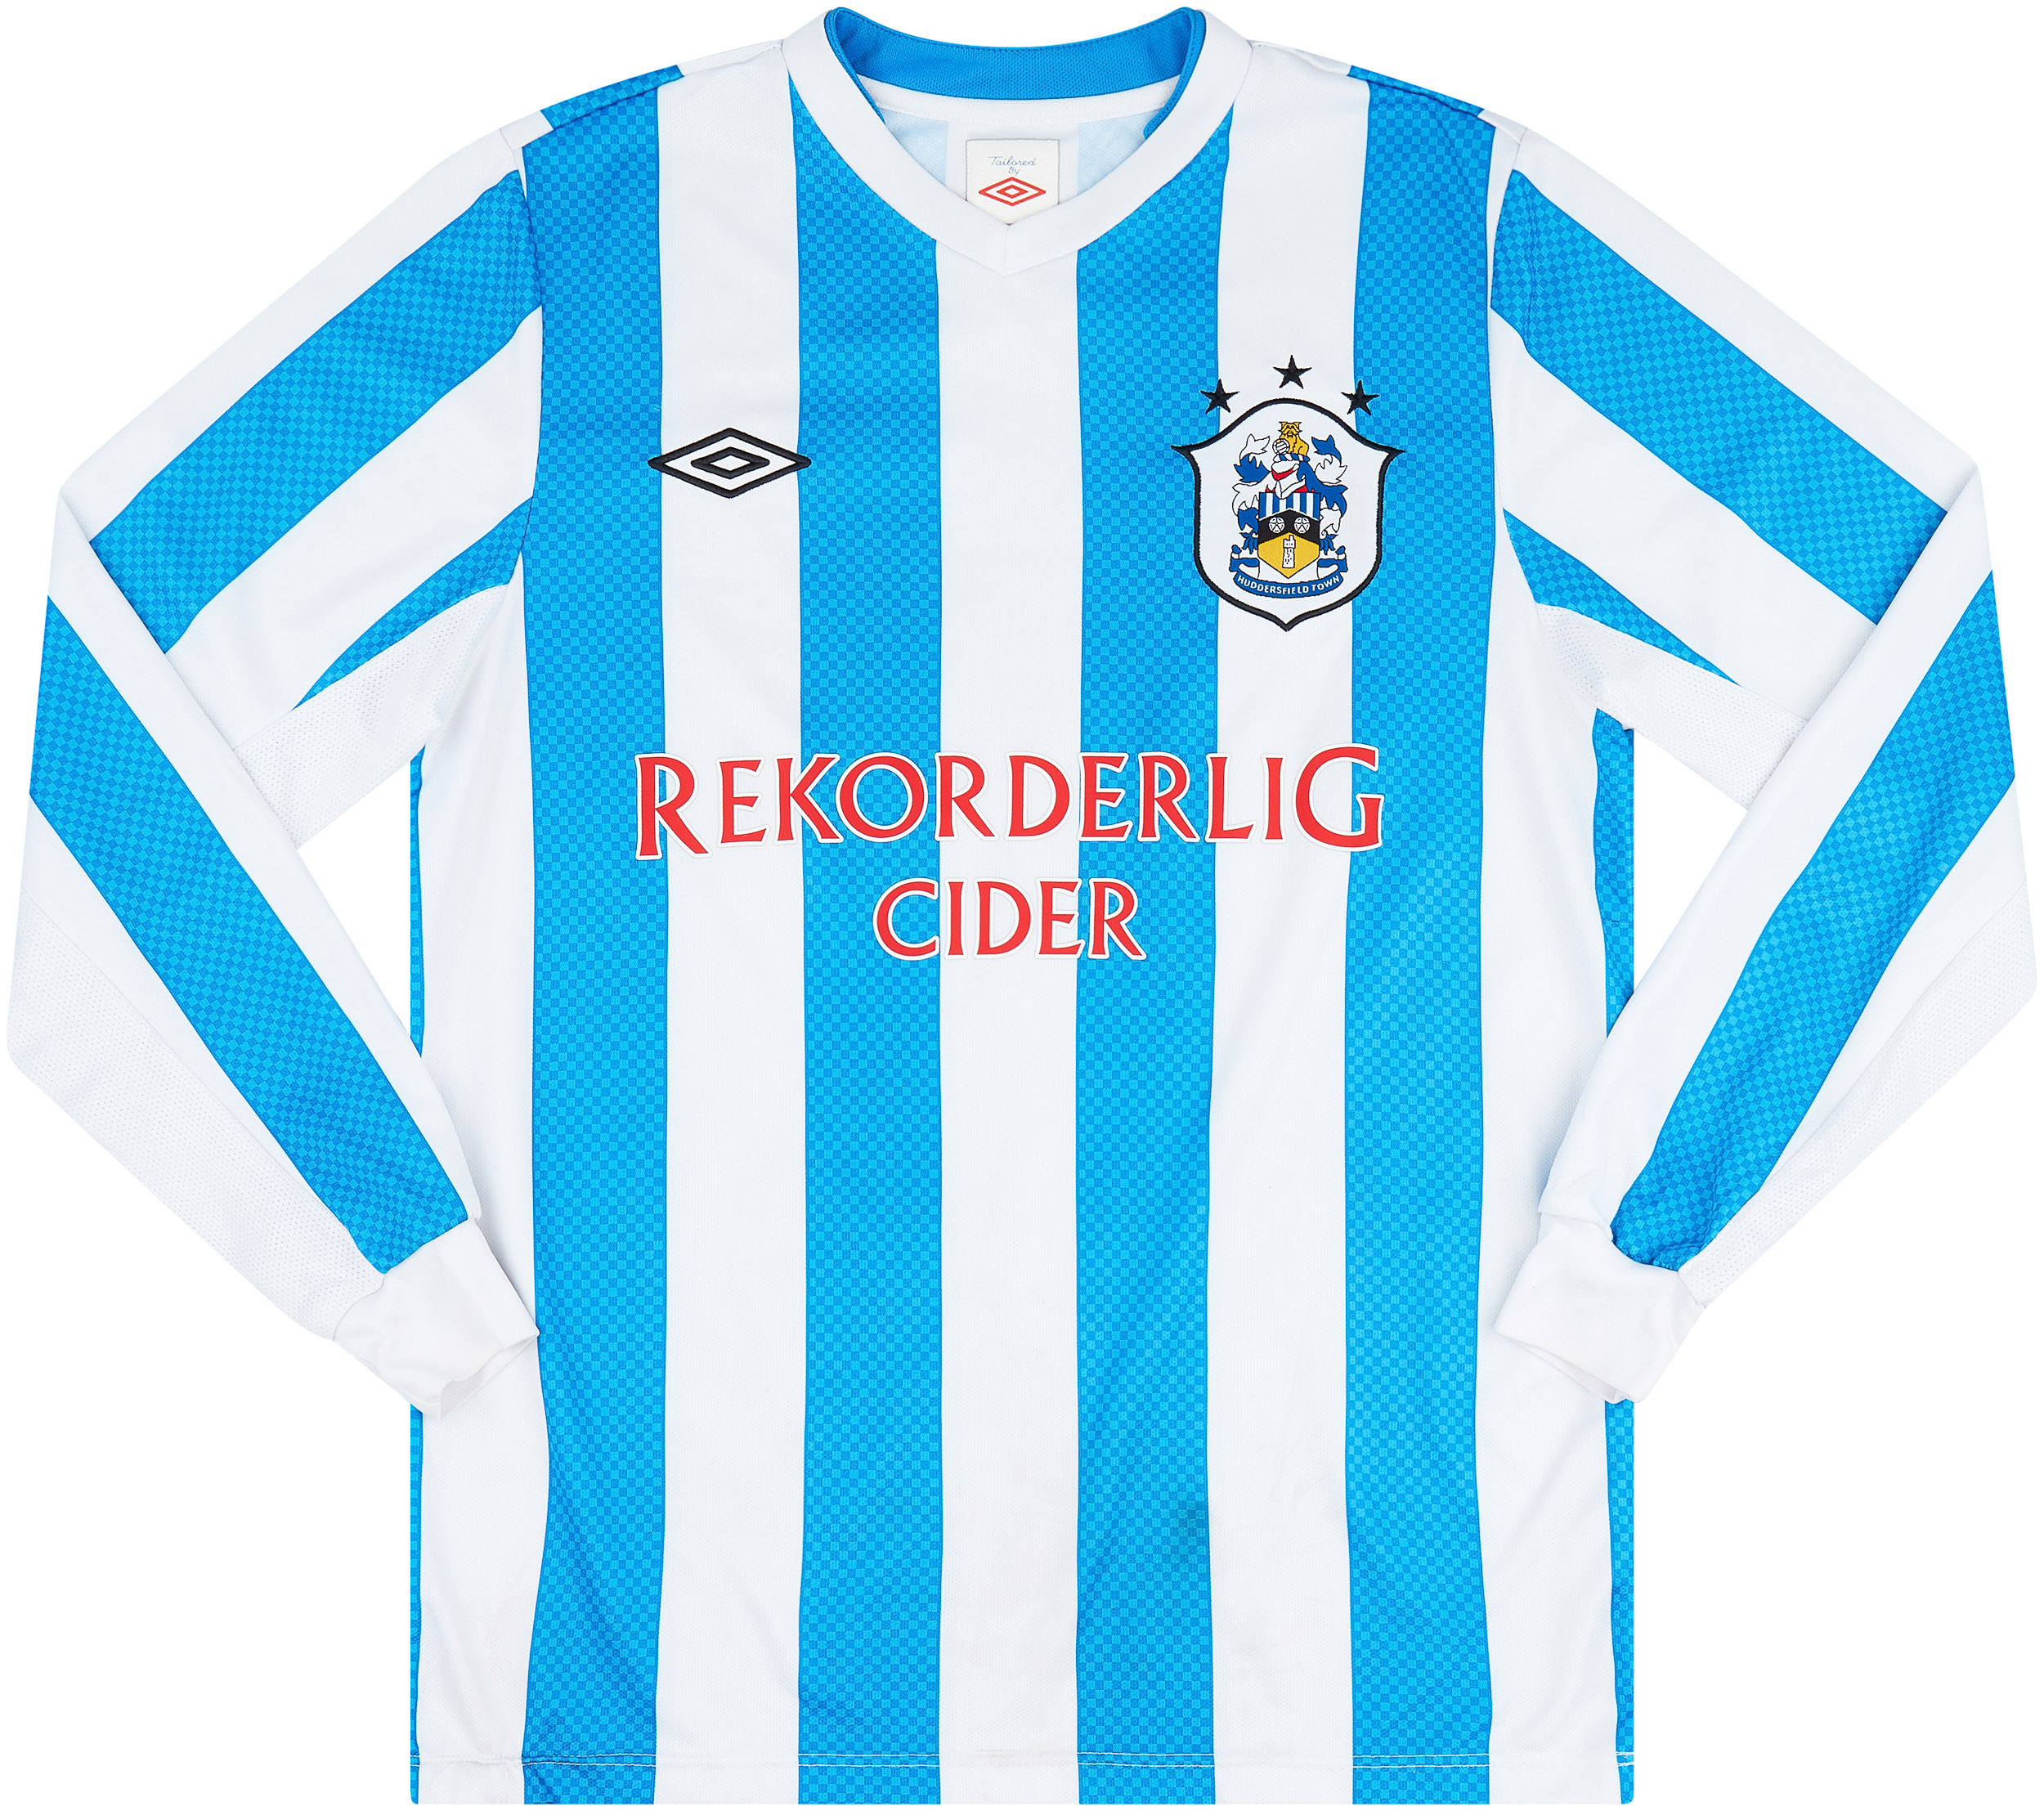 2012-13 Huddersfield Home Shirt - 6/10 - ()